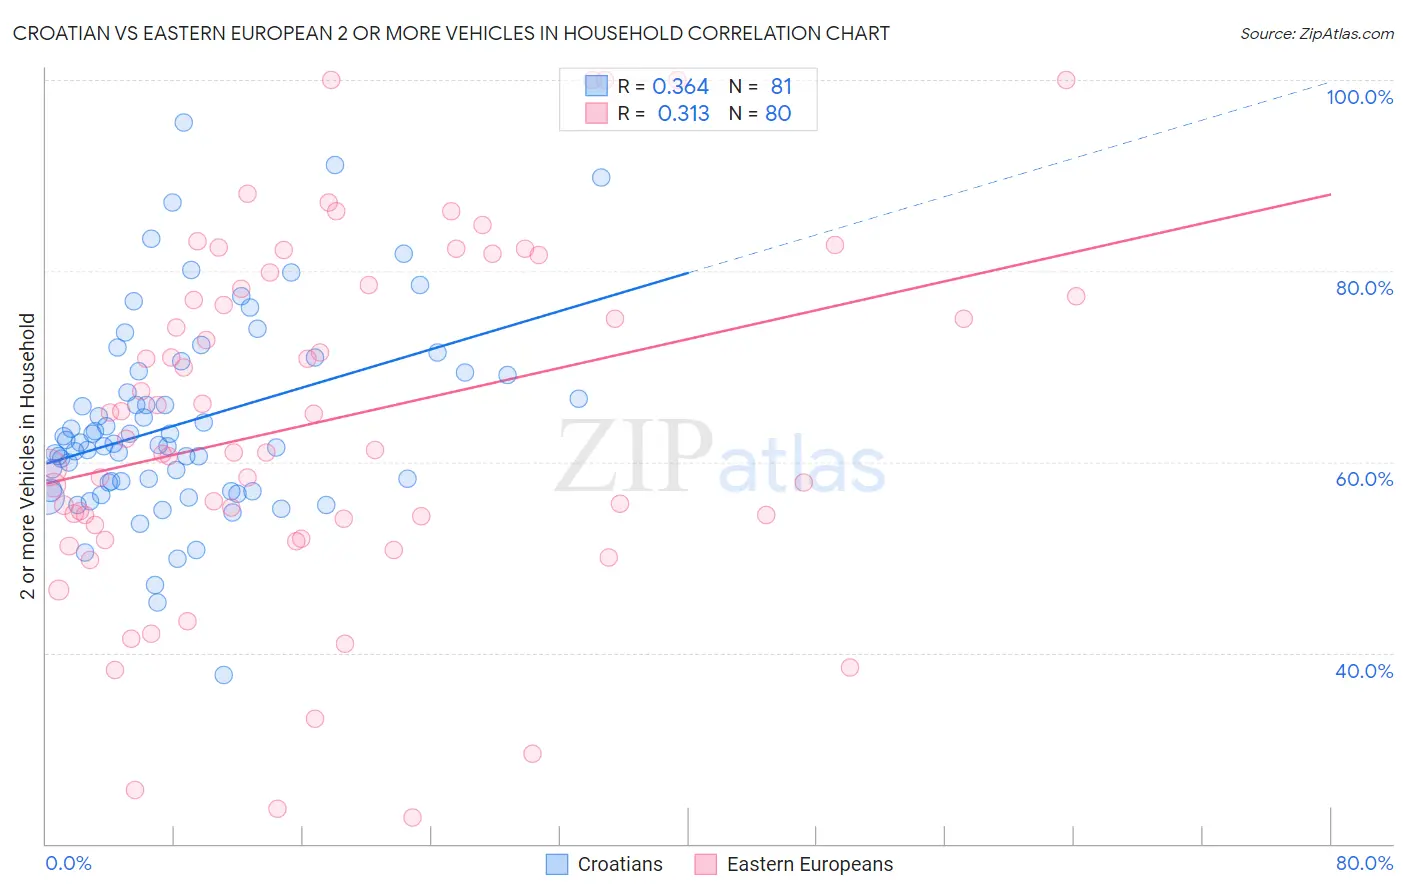 Croatian vs Eastern European 2 or more Vehicles in Household